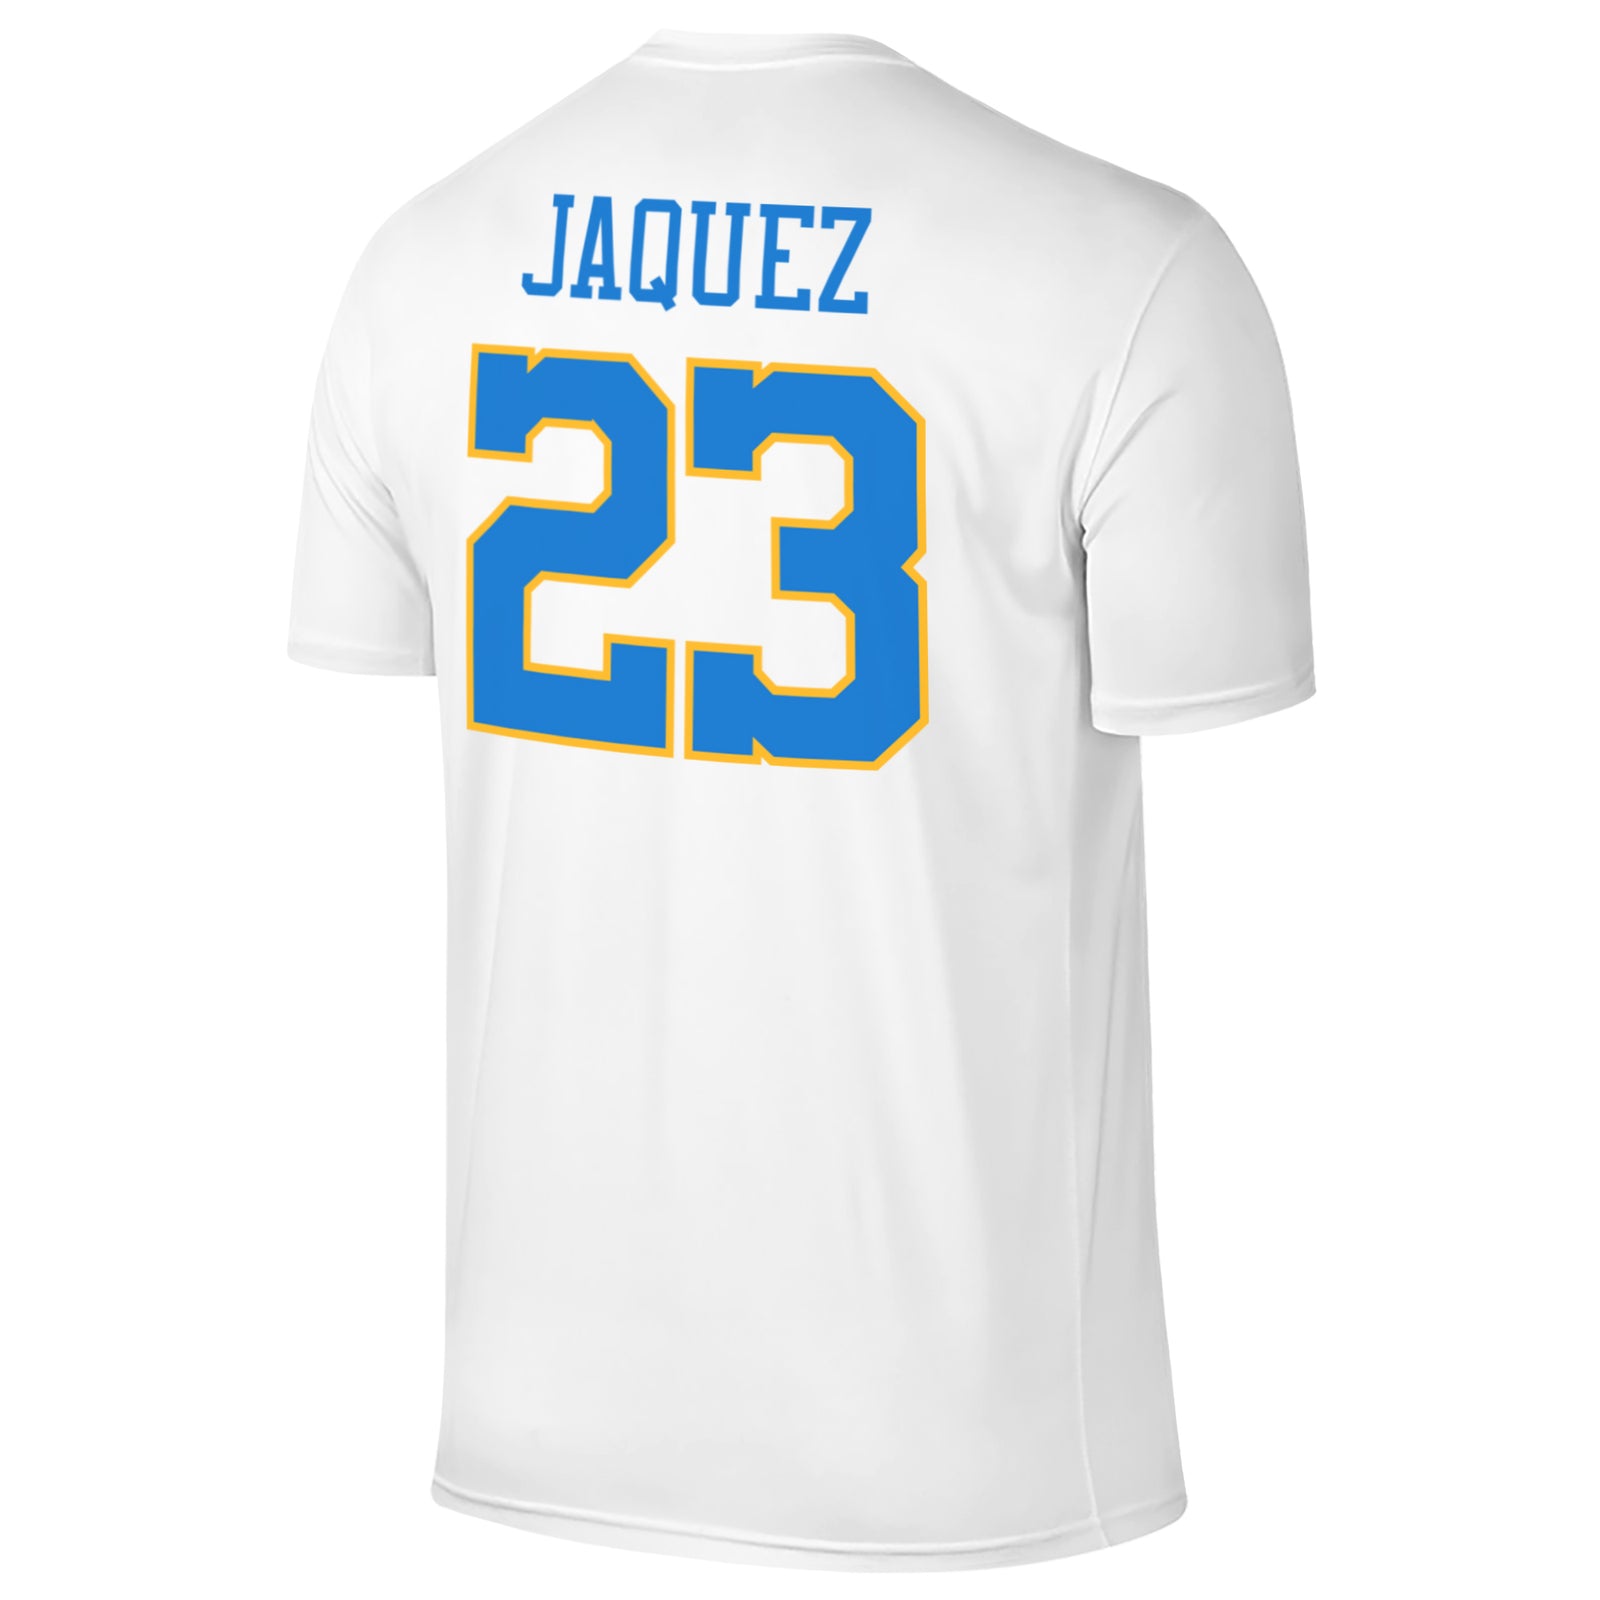 UCLA Bruins Gabriela Jaquez Player Tee